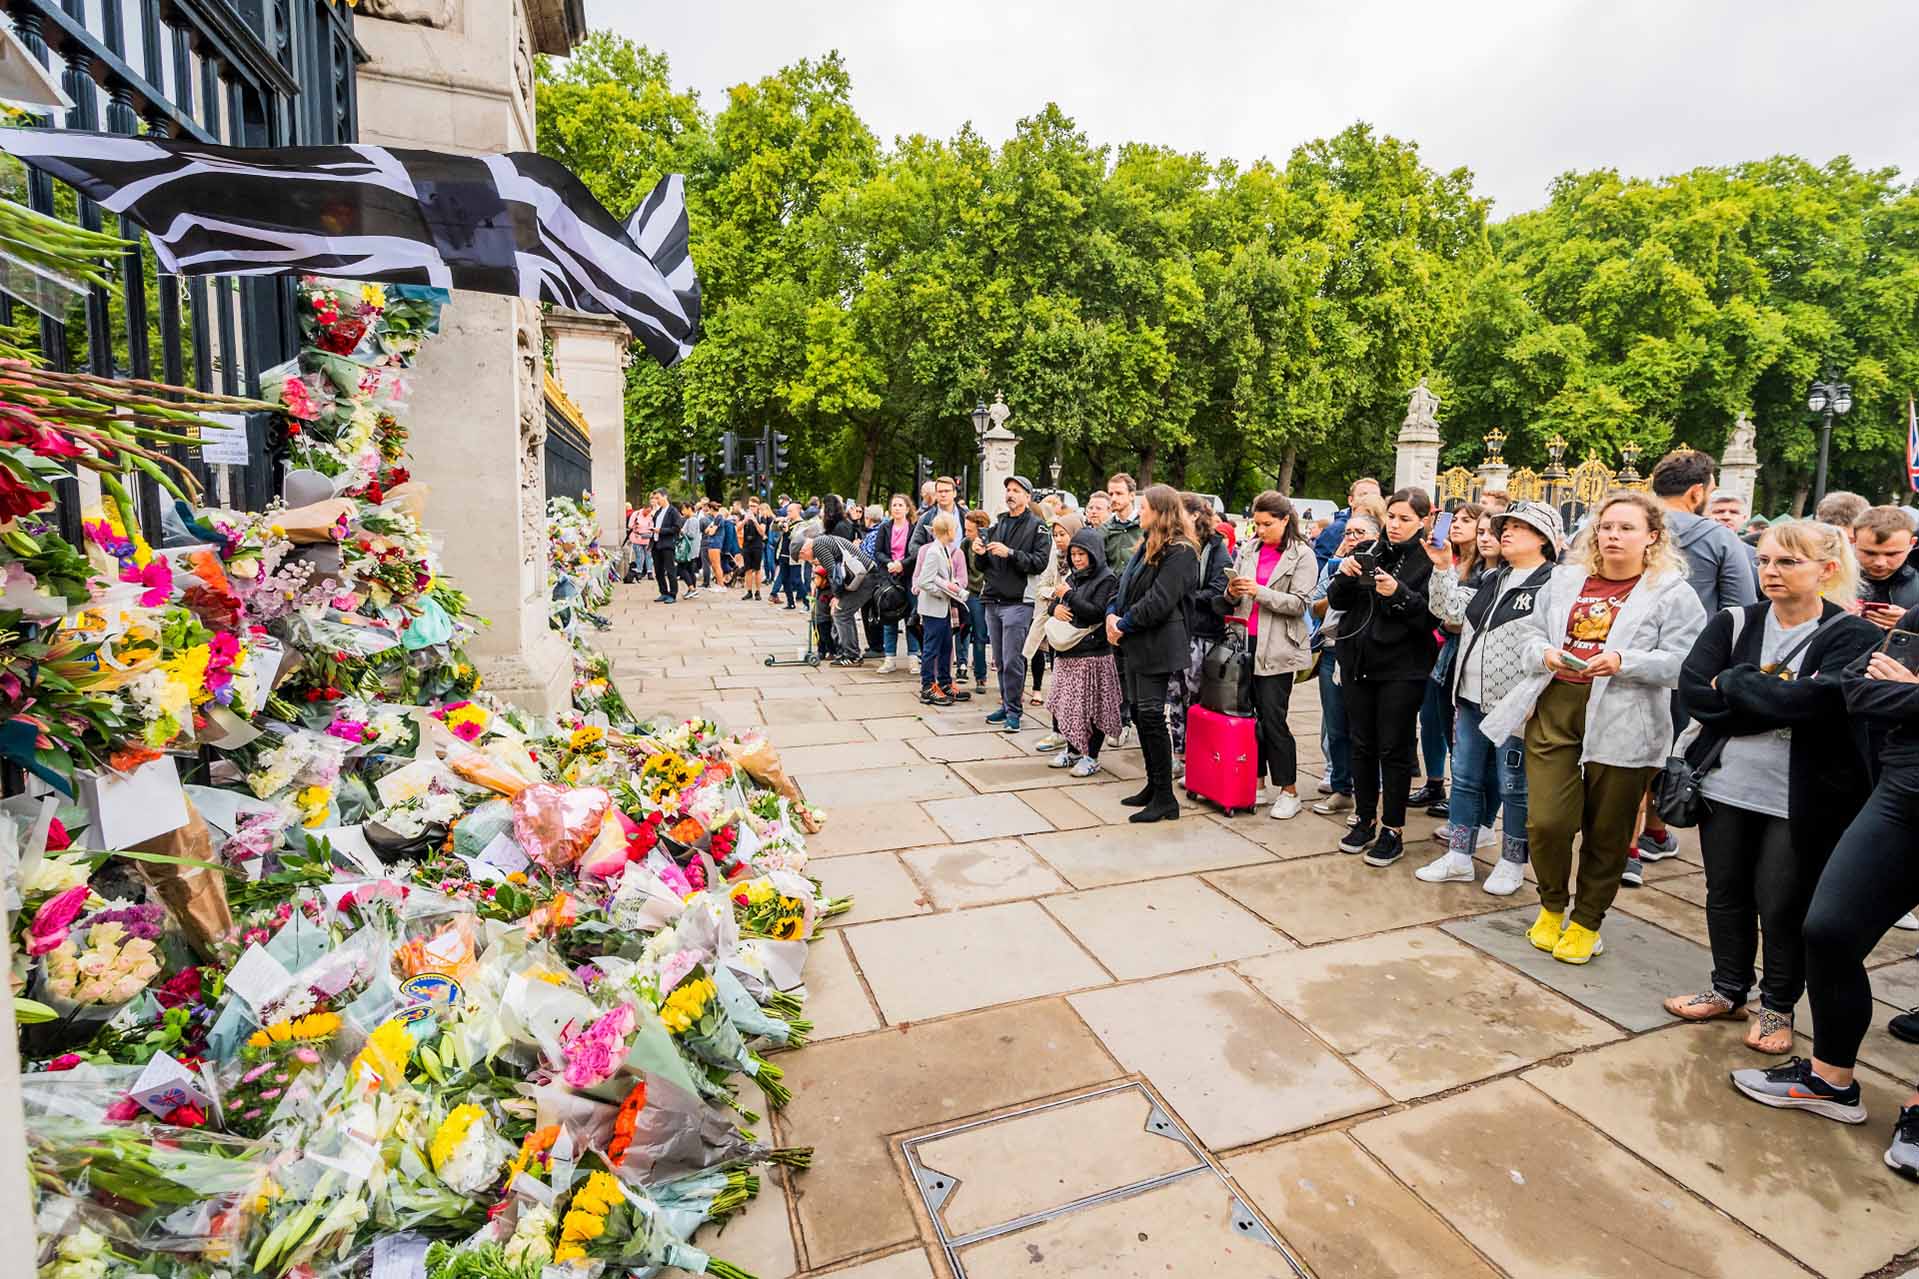 Repiques de campanas, 96 cañonazos y una misa en St. James: Londres arranca el adiós a Isabel II